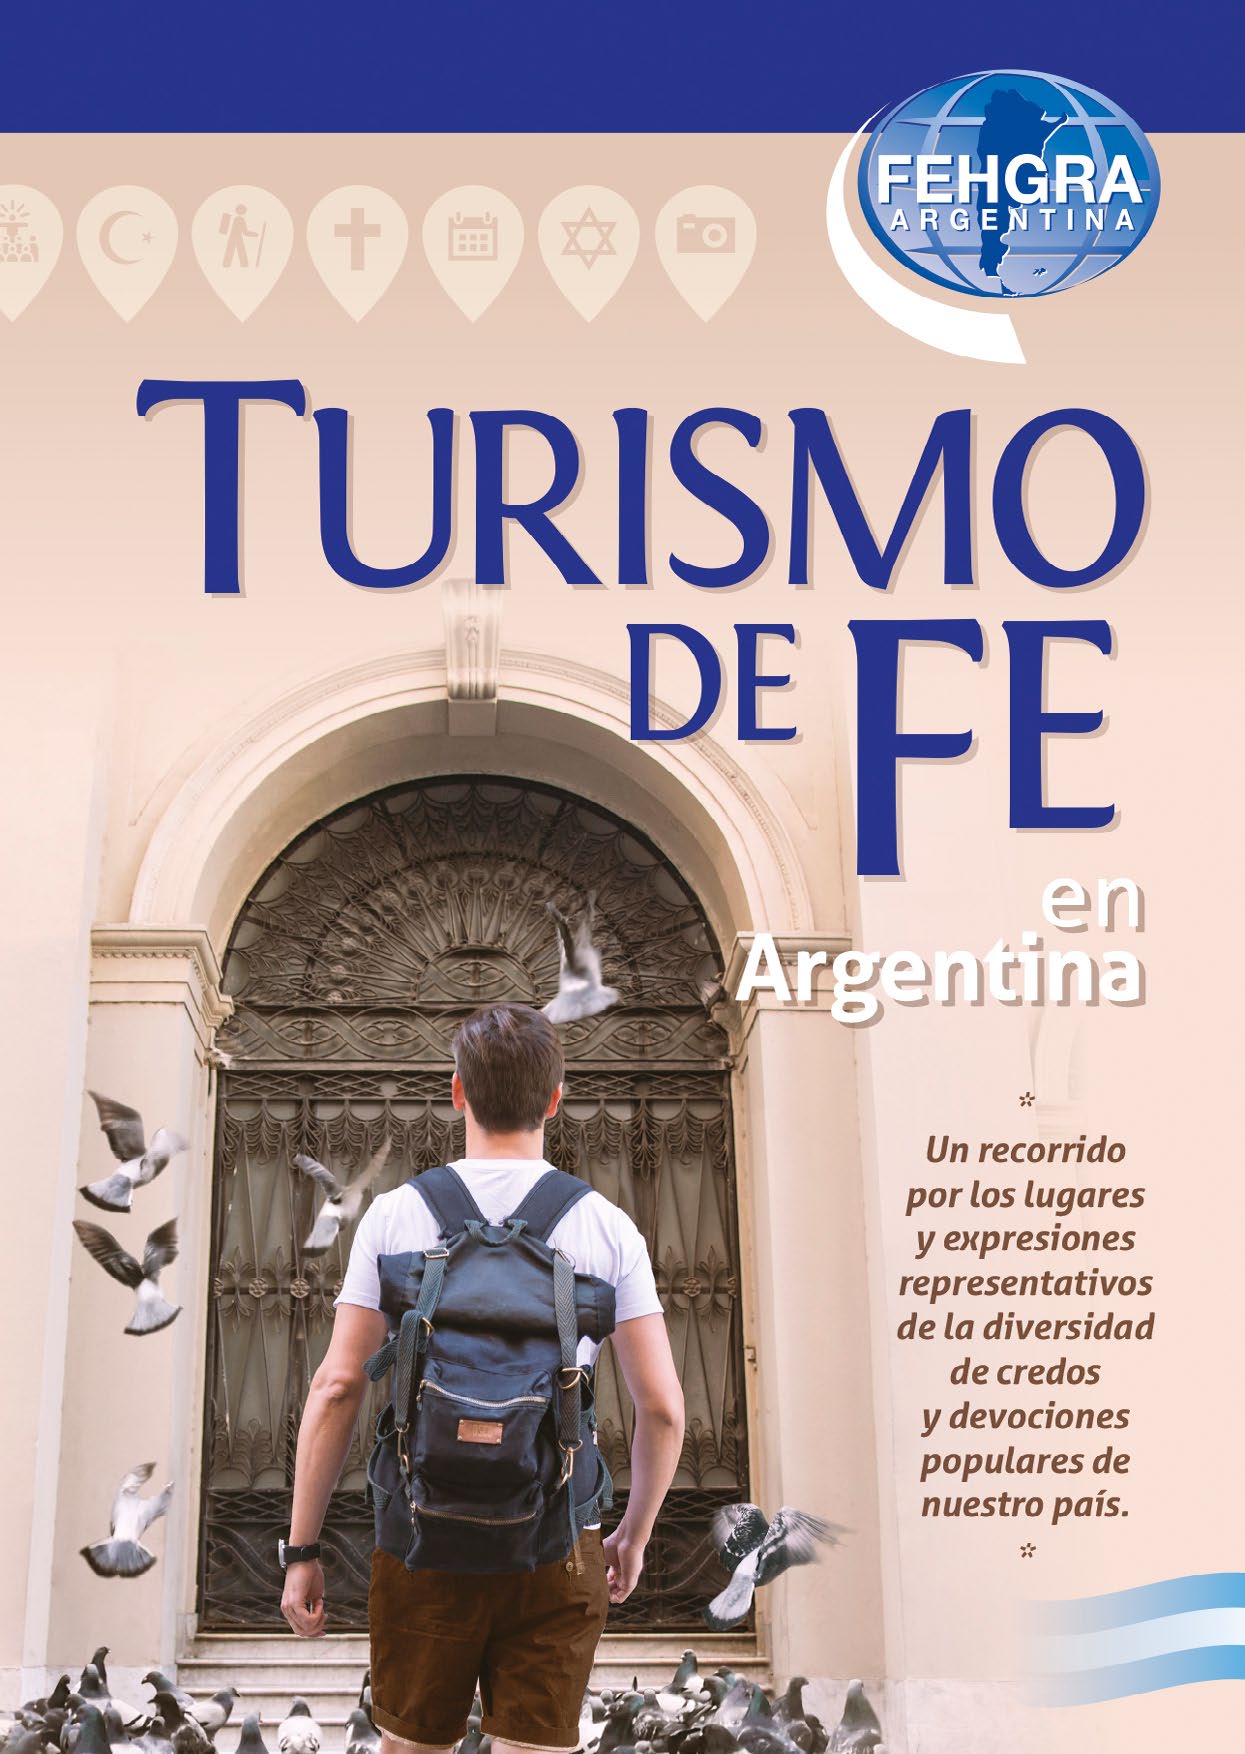 Tapa del libro Turismo de Fe en Argentina - FEHGRA